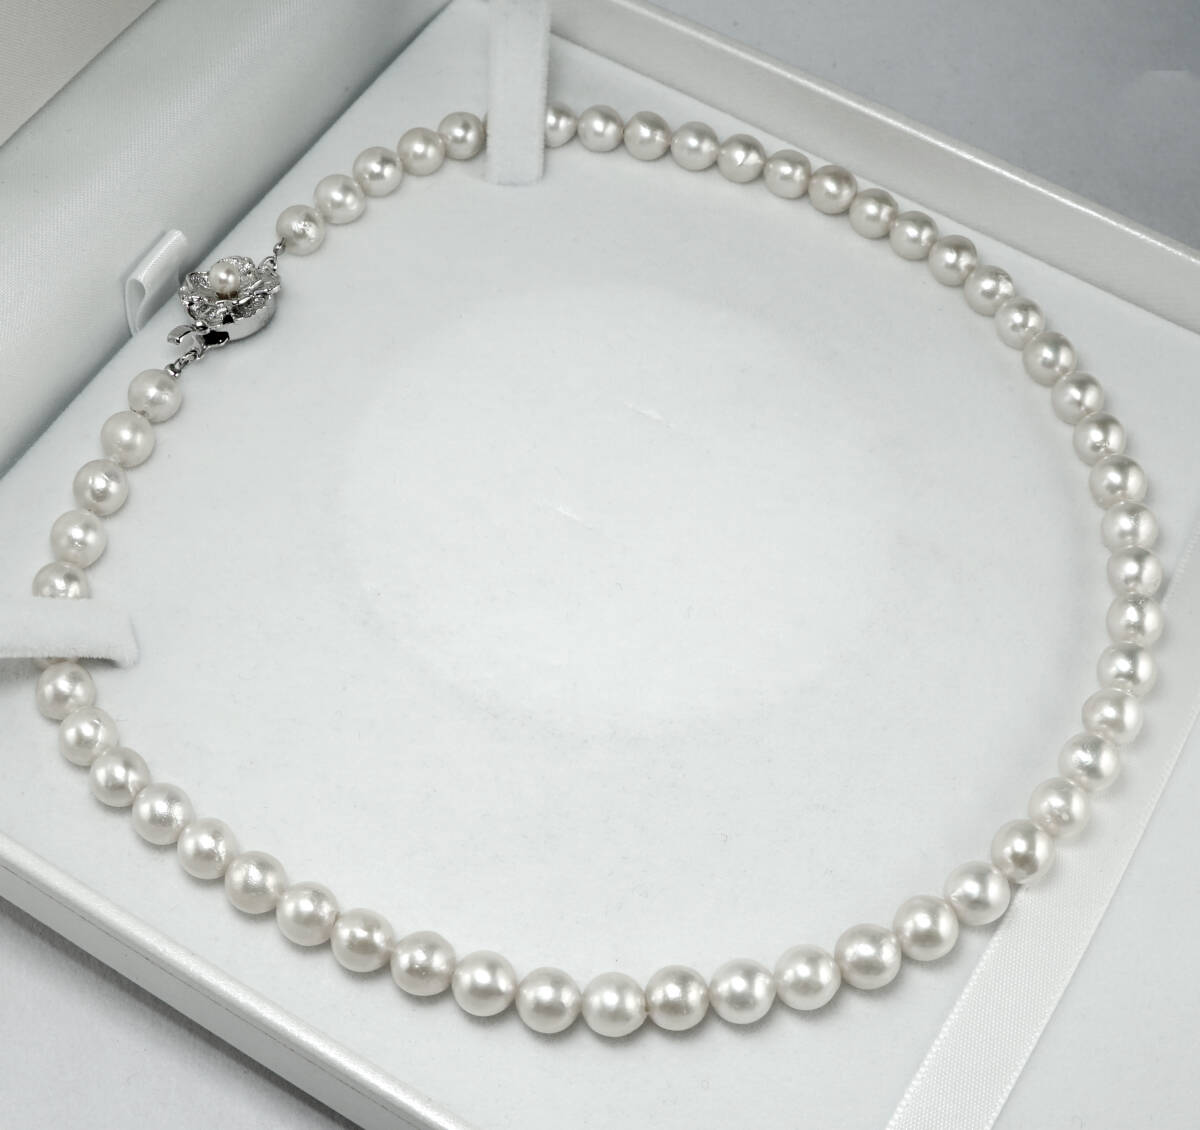 ★天然アコヤパール 7.5mm 最高級 42cm SV ネックレス 宝石 ジュエリー jewelry.の画像5